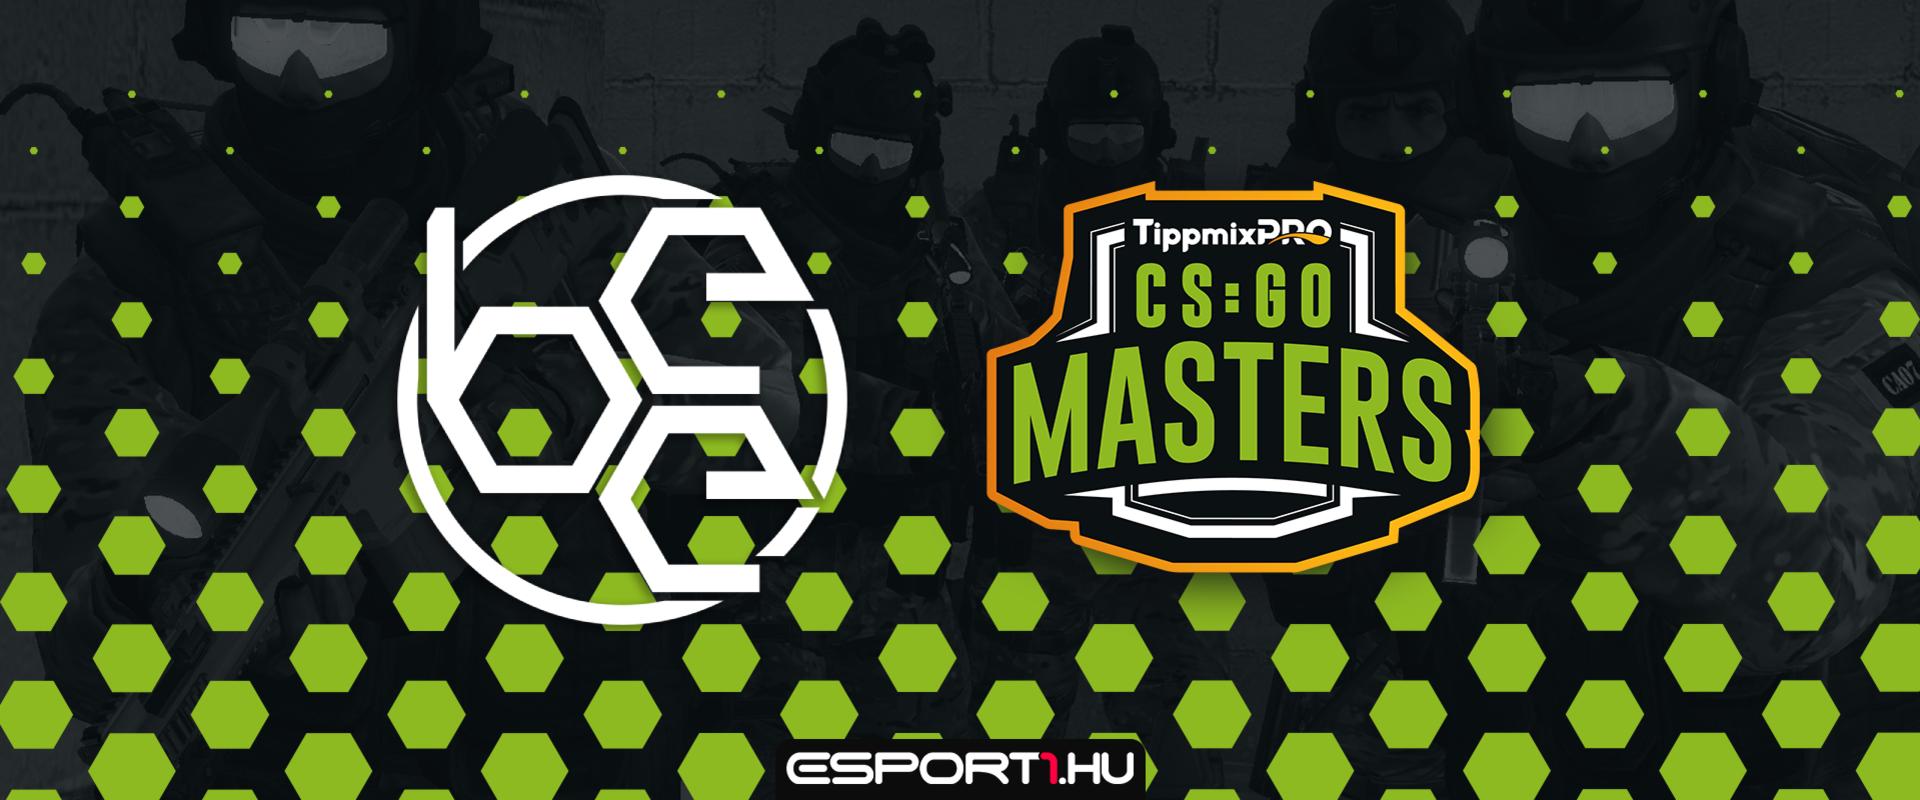 TippmixPro CS:GO Masters: Őrült izgalmakkal zárult a második elődöntő